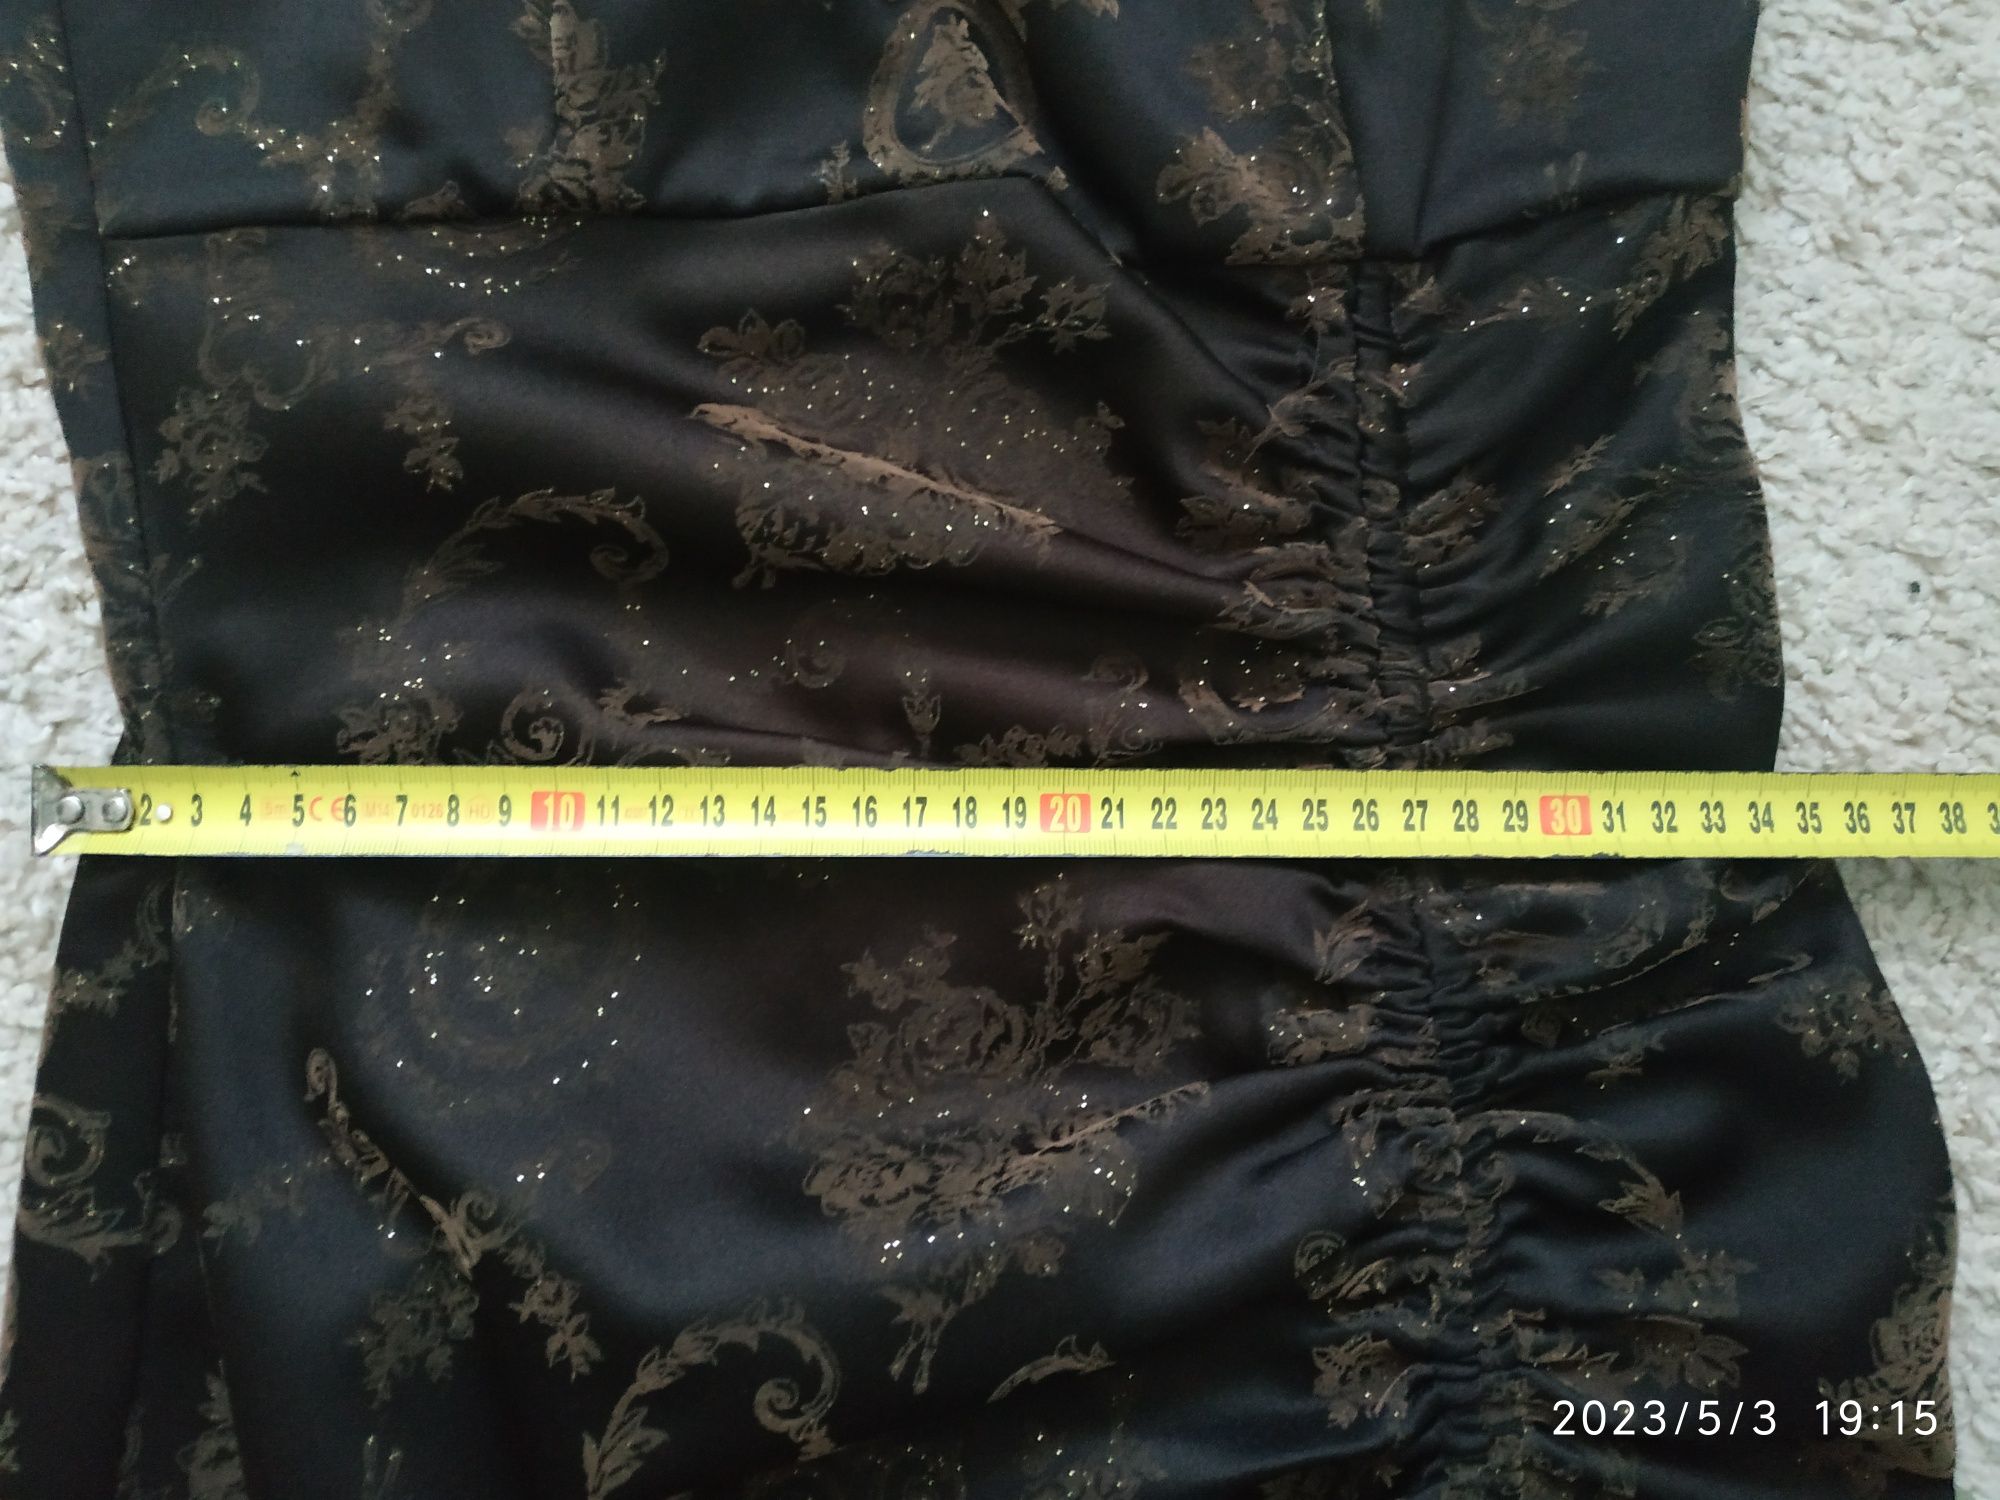 Sukienka na ramiączka 34-36 XS S brązowa z drobinkami zlota